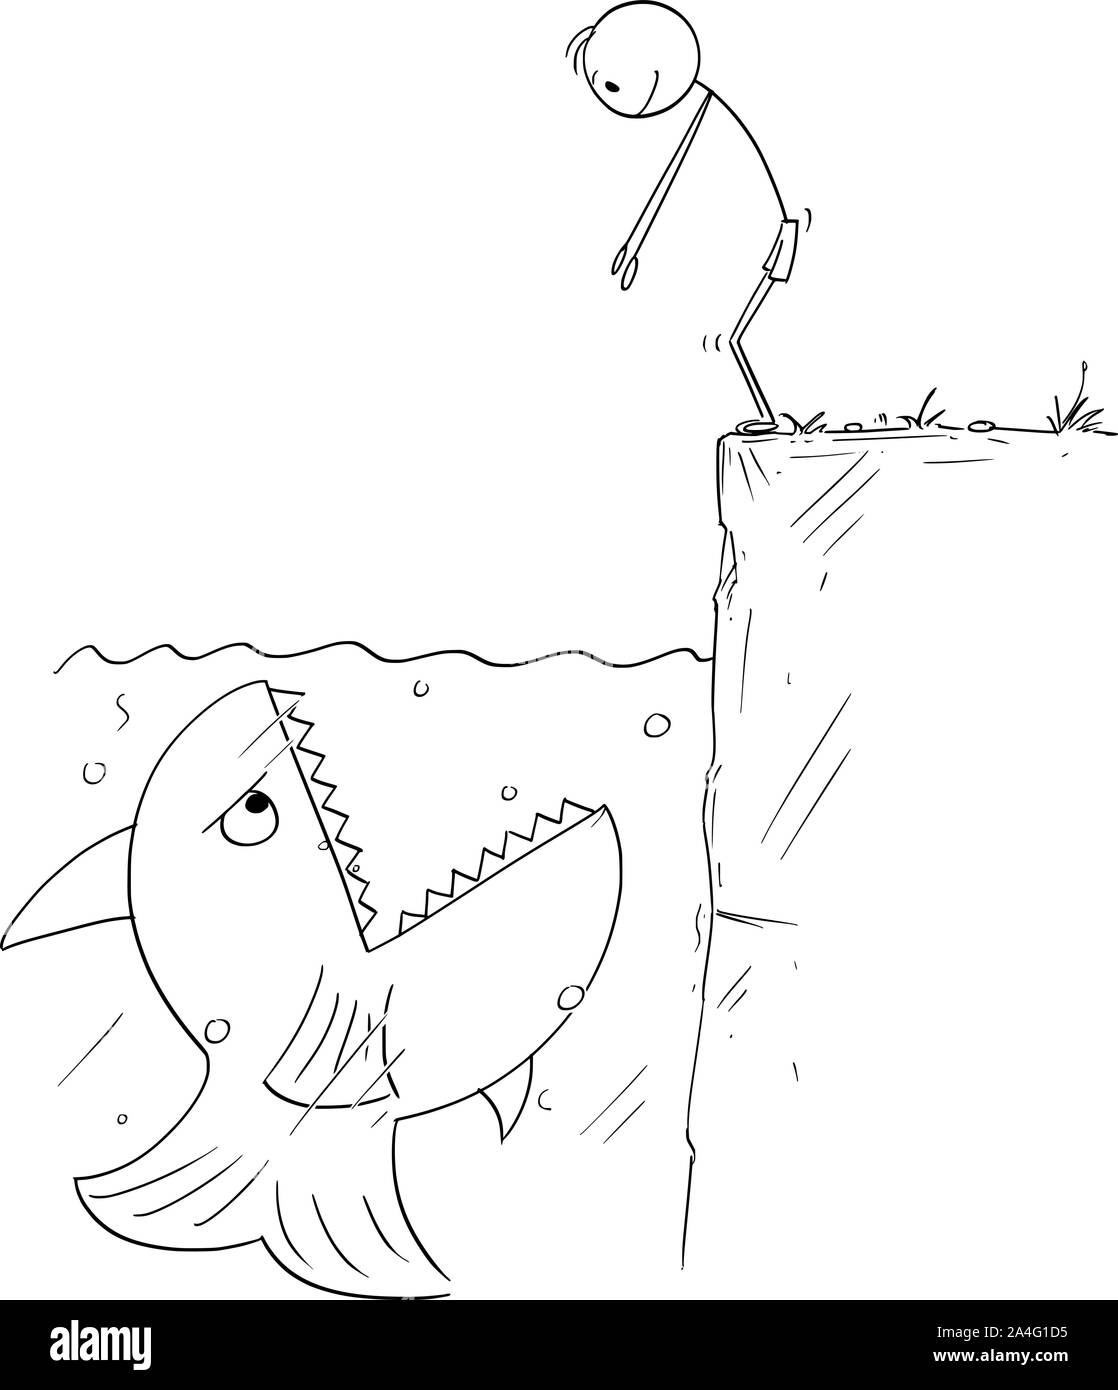 Cartoon vectores stick figura dibujo Ilustración conceptual del hombre o nadador listo para saltar al agua, pero está a la espera de peces gigantes con la boca abierta para comer él. Ilustración del Vector